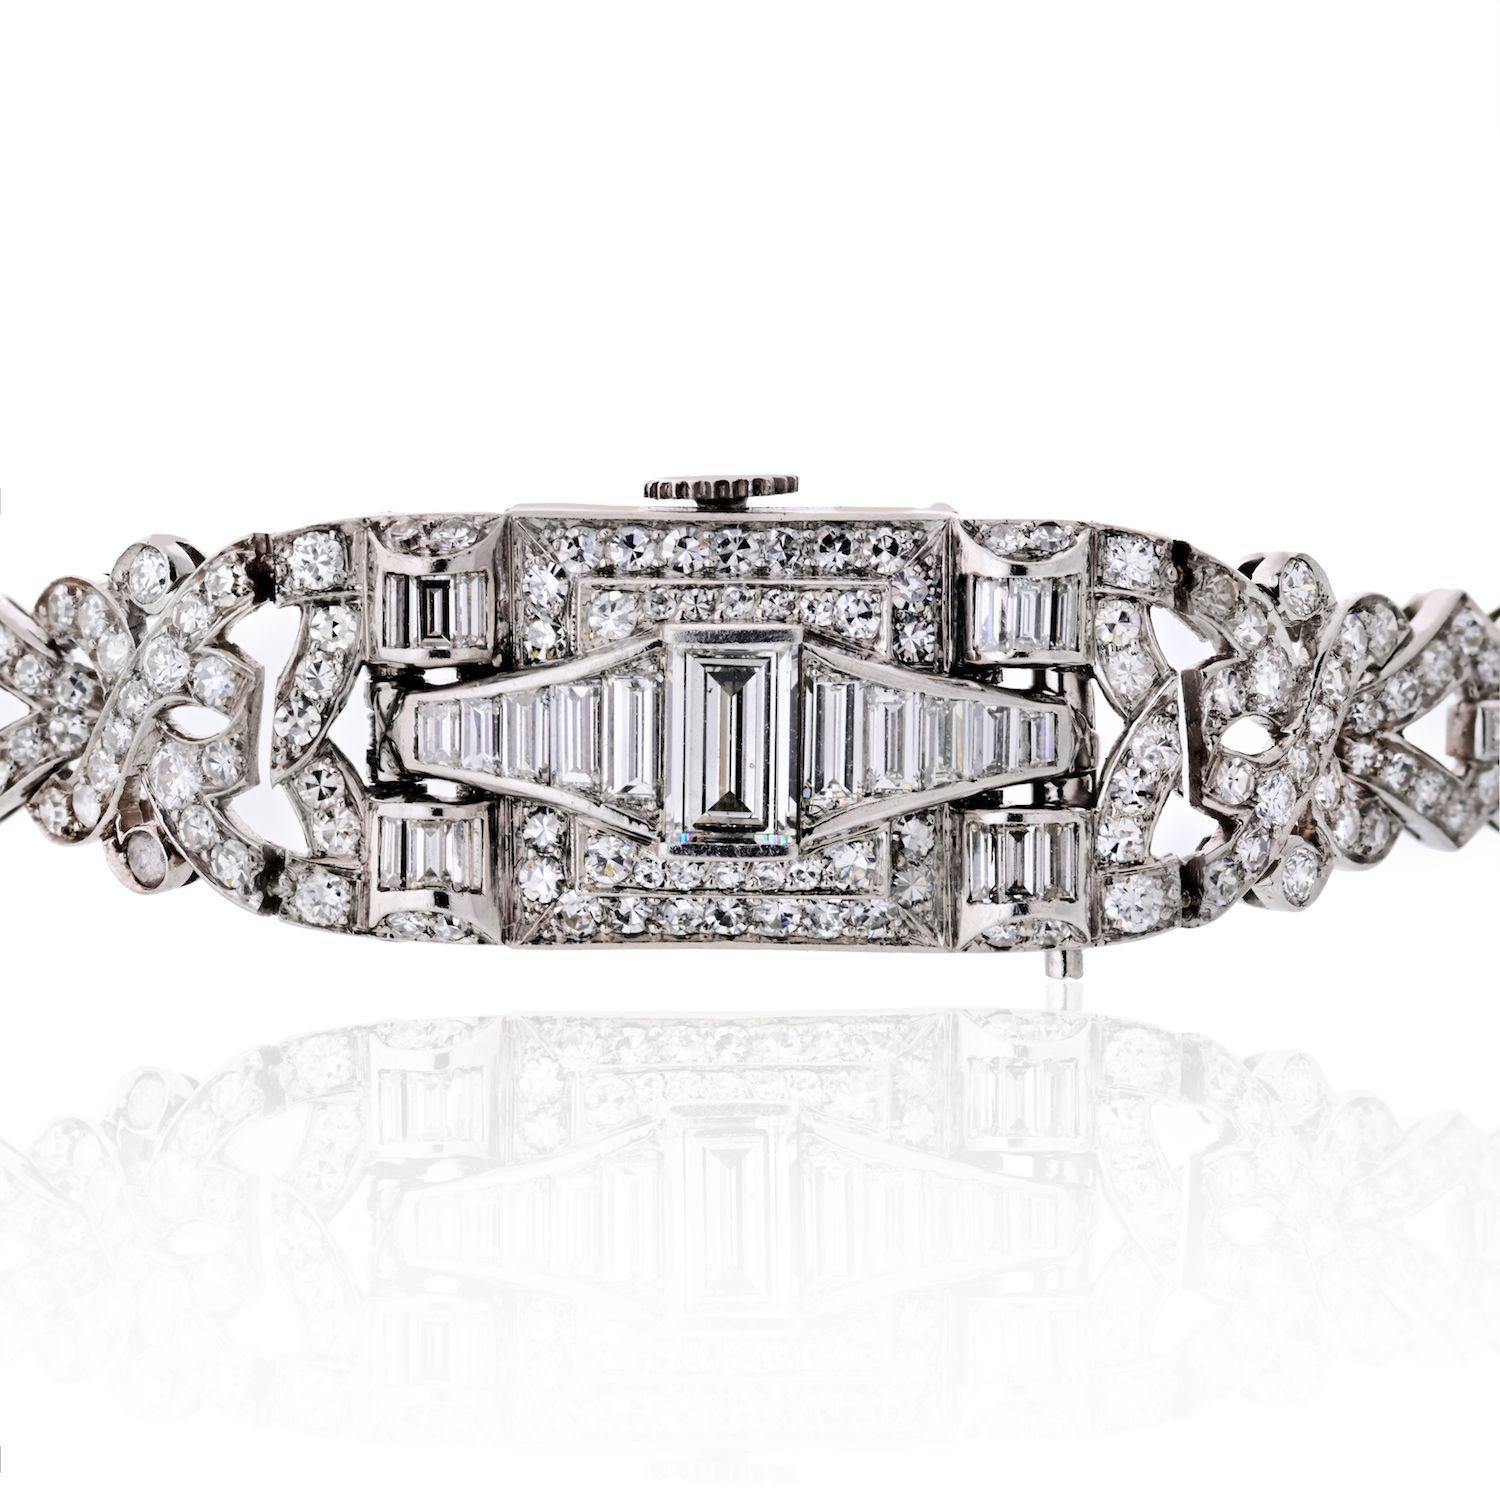 Dies ist ein wunderschönes Art Deco Glycine Diamond Platinum Watch. Die Uhr ist mit ca. 6,50 Karat Diamanten im Rund- und Baguetteschliff besetzt. Die Farbe der Diamanten ist H-I und die Reinheit ist im Durchschnitt VS. Das Zifferblatt ist signiert.